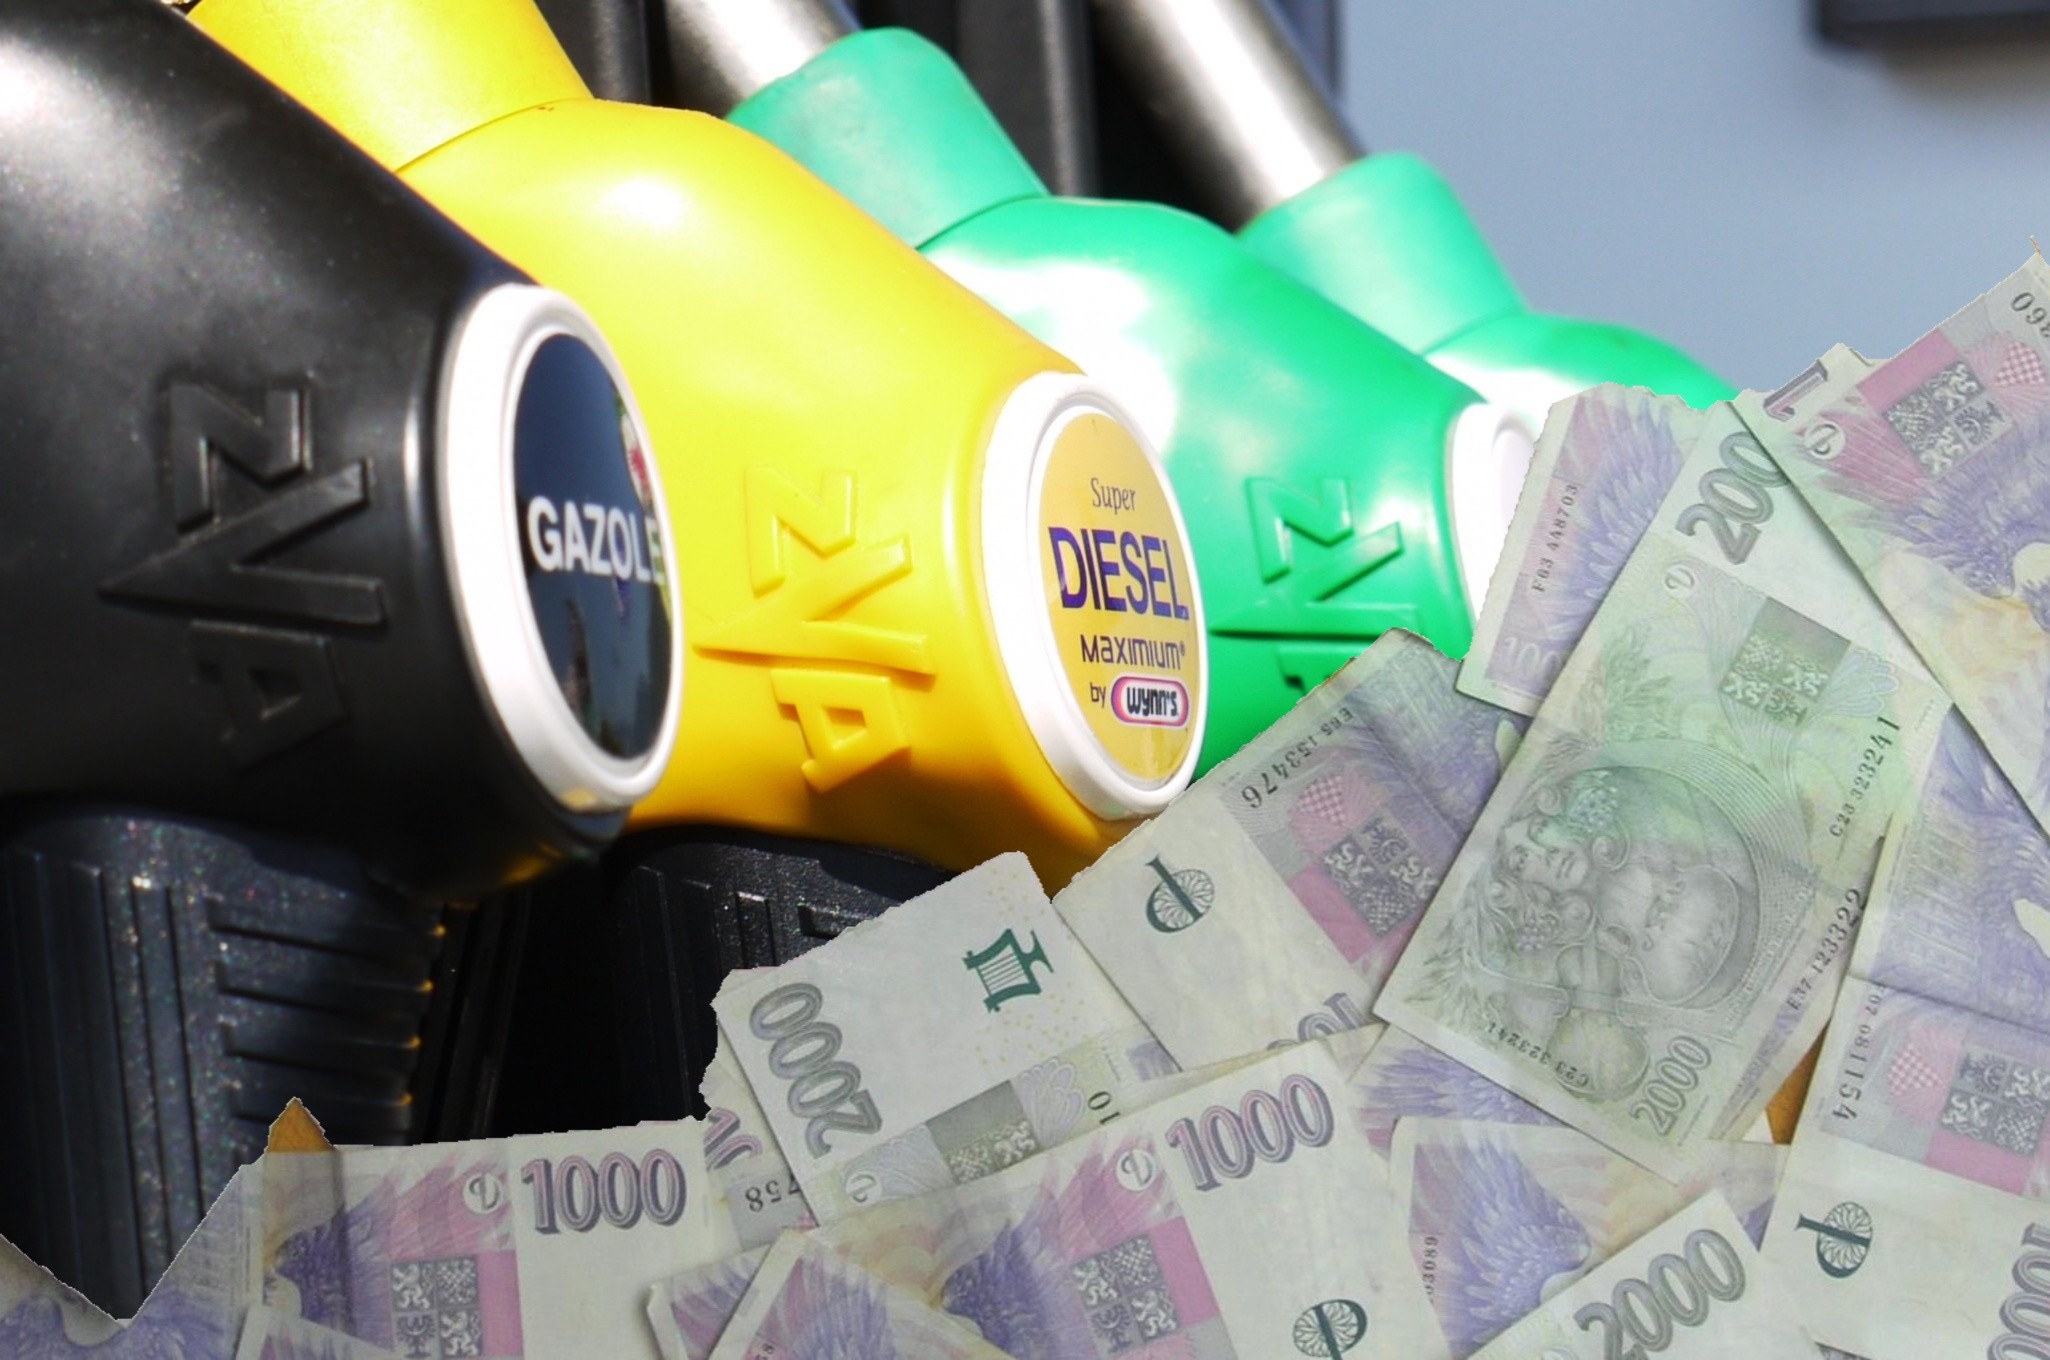 Wzrost cen paliw w Czechach przyspiesza, a ceny są już wyższe niż w Austrii.  W Polsce ceny są teraz najniższe w całej UE, jest nawet taniej niż w Bułgarii czy Rumunii